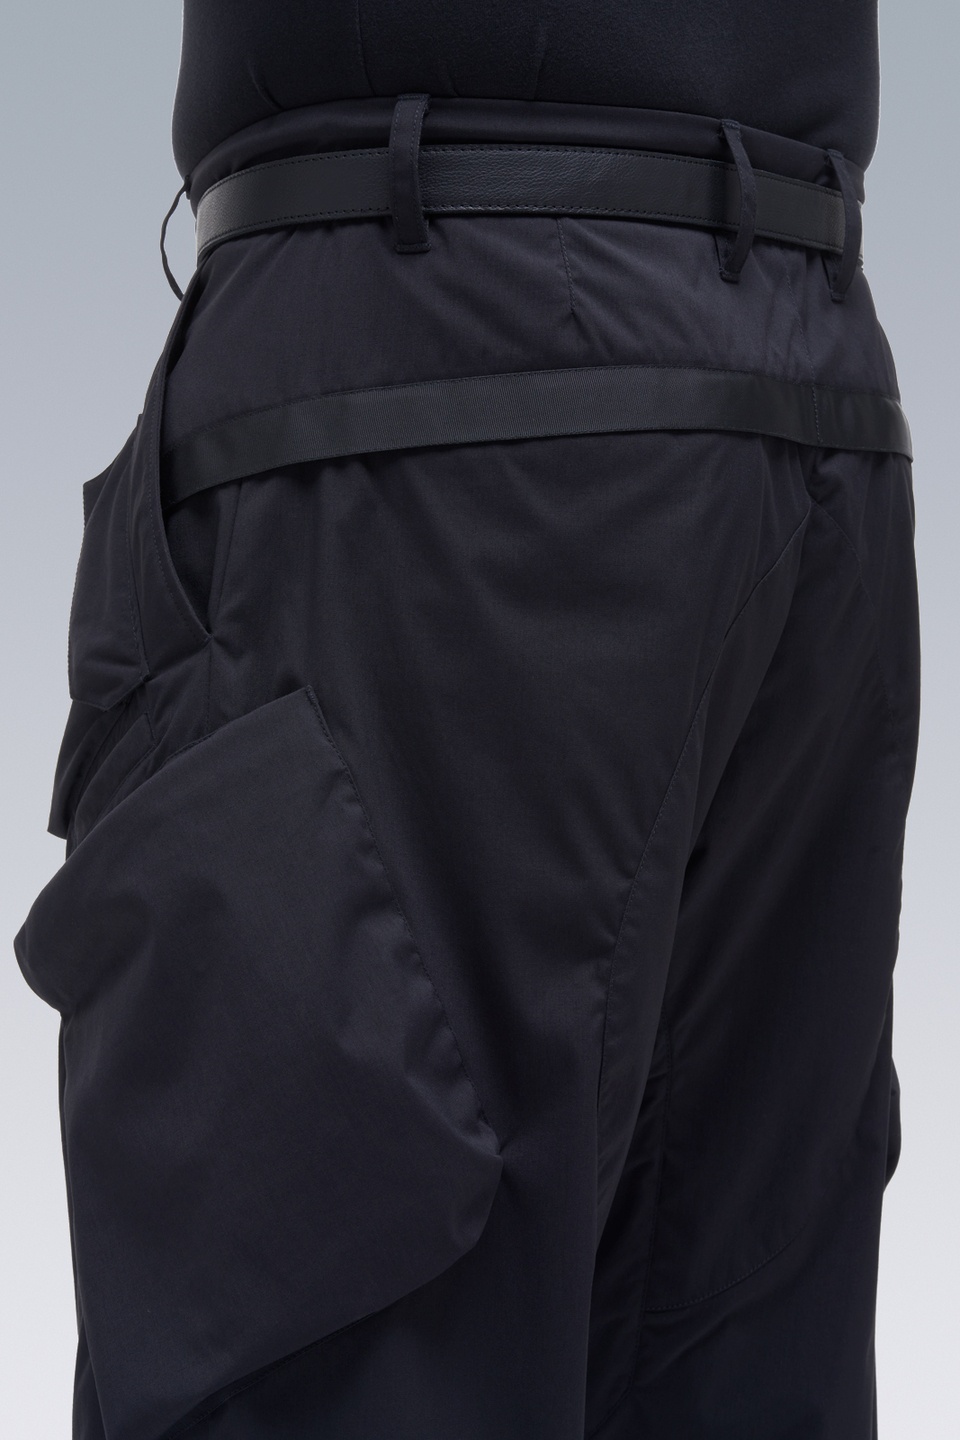 ACRONYM P24A-E Encapsulated Nylon Articulated BDU Trouser Black ...